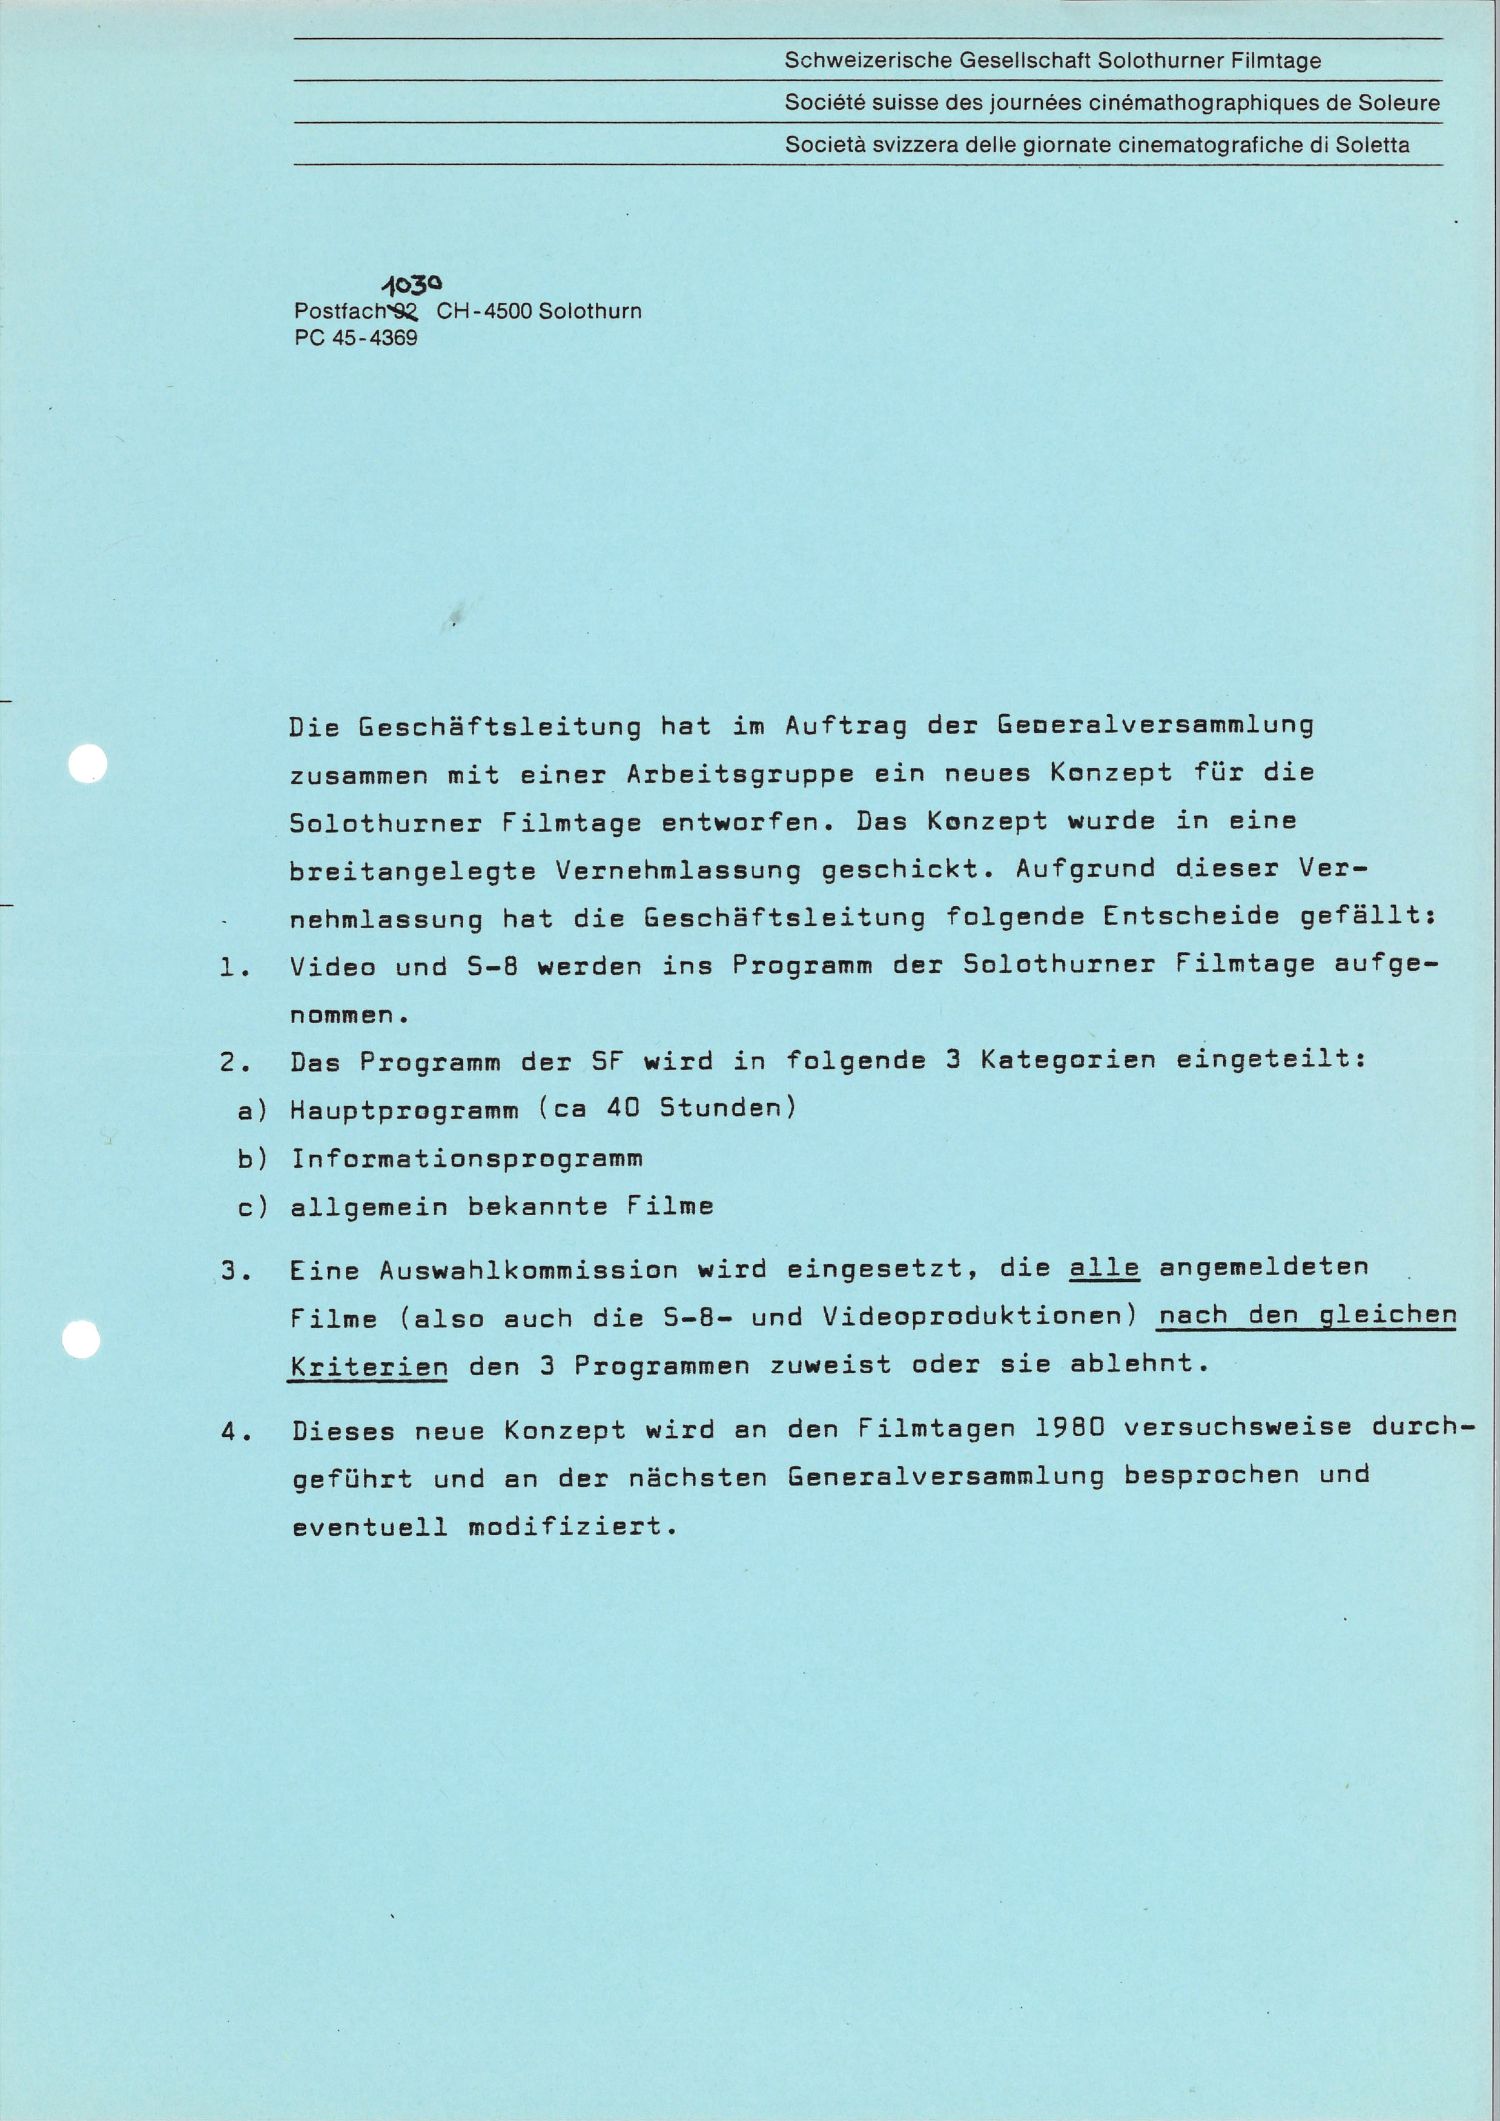 Neues Konzept für die Solothurner Filmtage, 1980